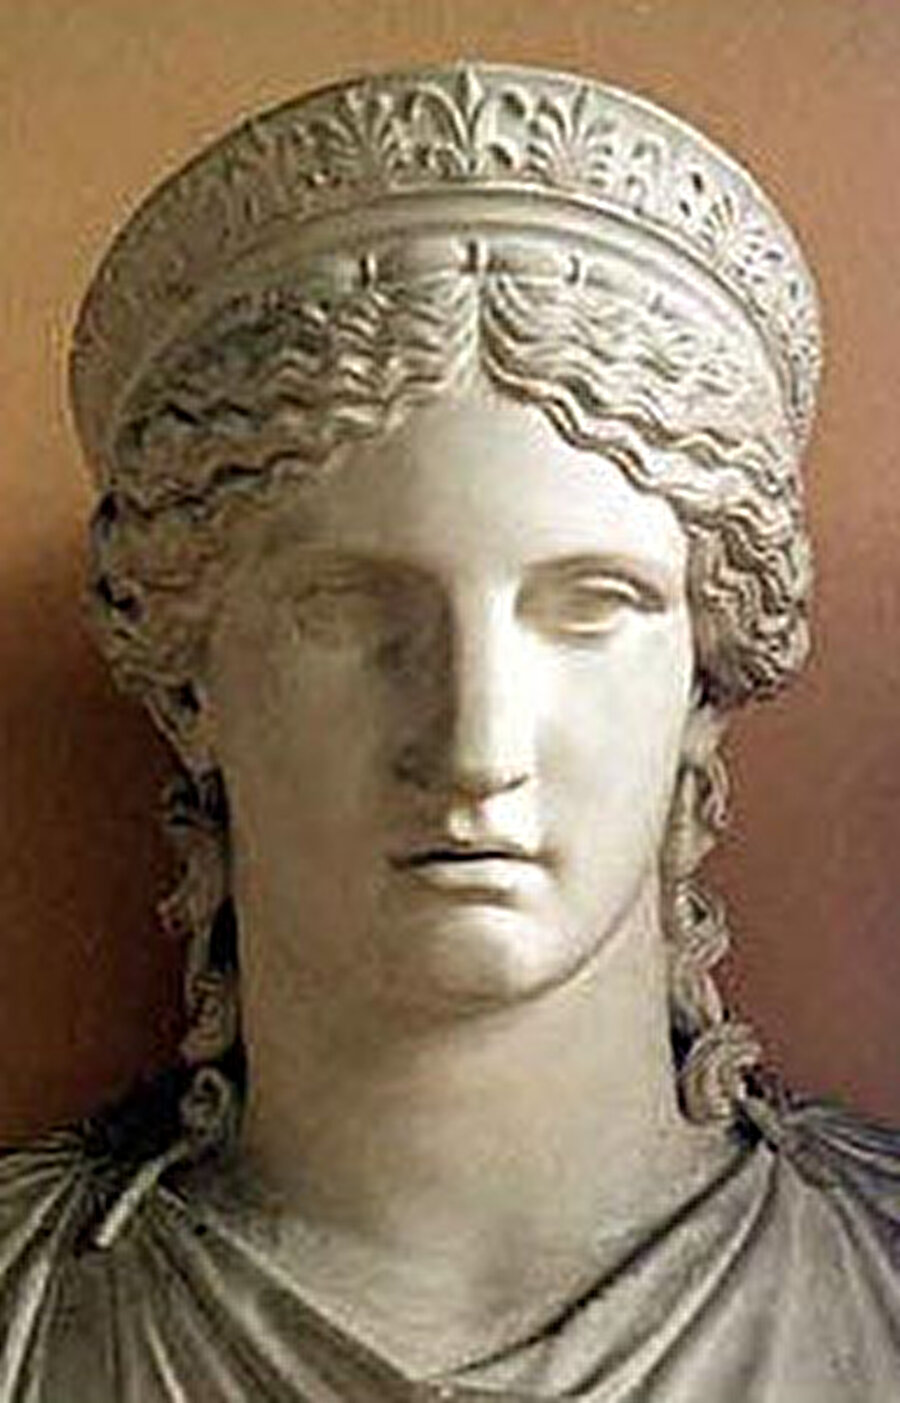 Haziran(June)

                                    
                                    
                                    
                                    
	Süryanice sıcak anlamına gelen "hazıran" sözcüğünden alınmıştır Haziran ayının İngilizce karşılığı olan June, Jüpiter'in eşi, Roma tanrıçası Juno'dan gelmektedir.

                                
                                
                                
                                